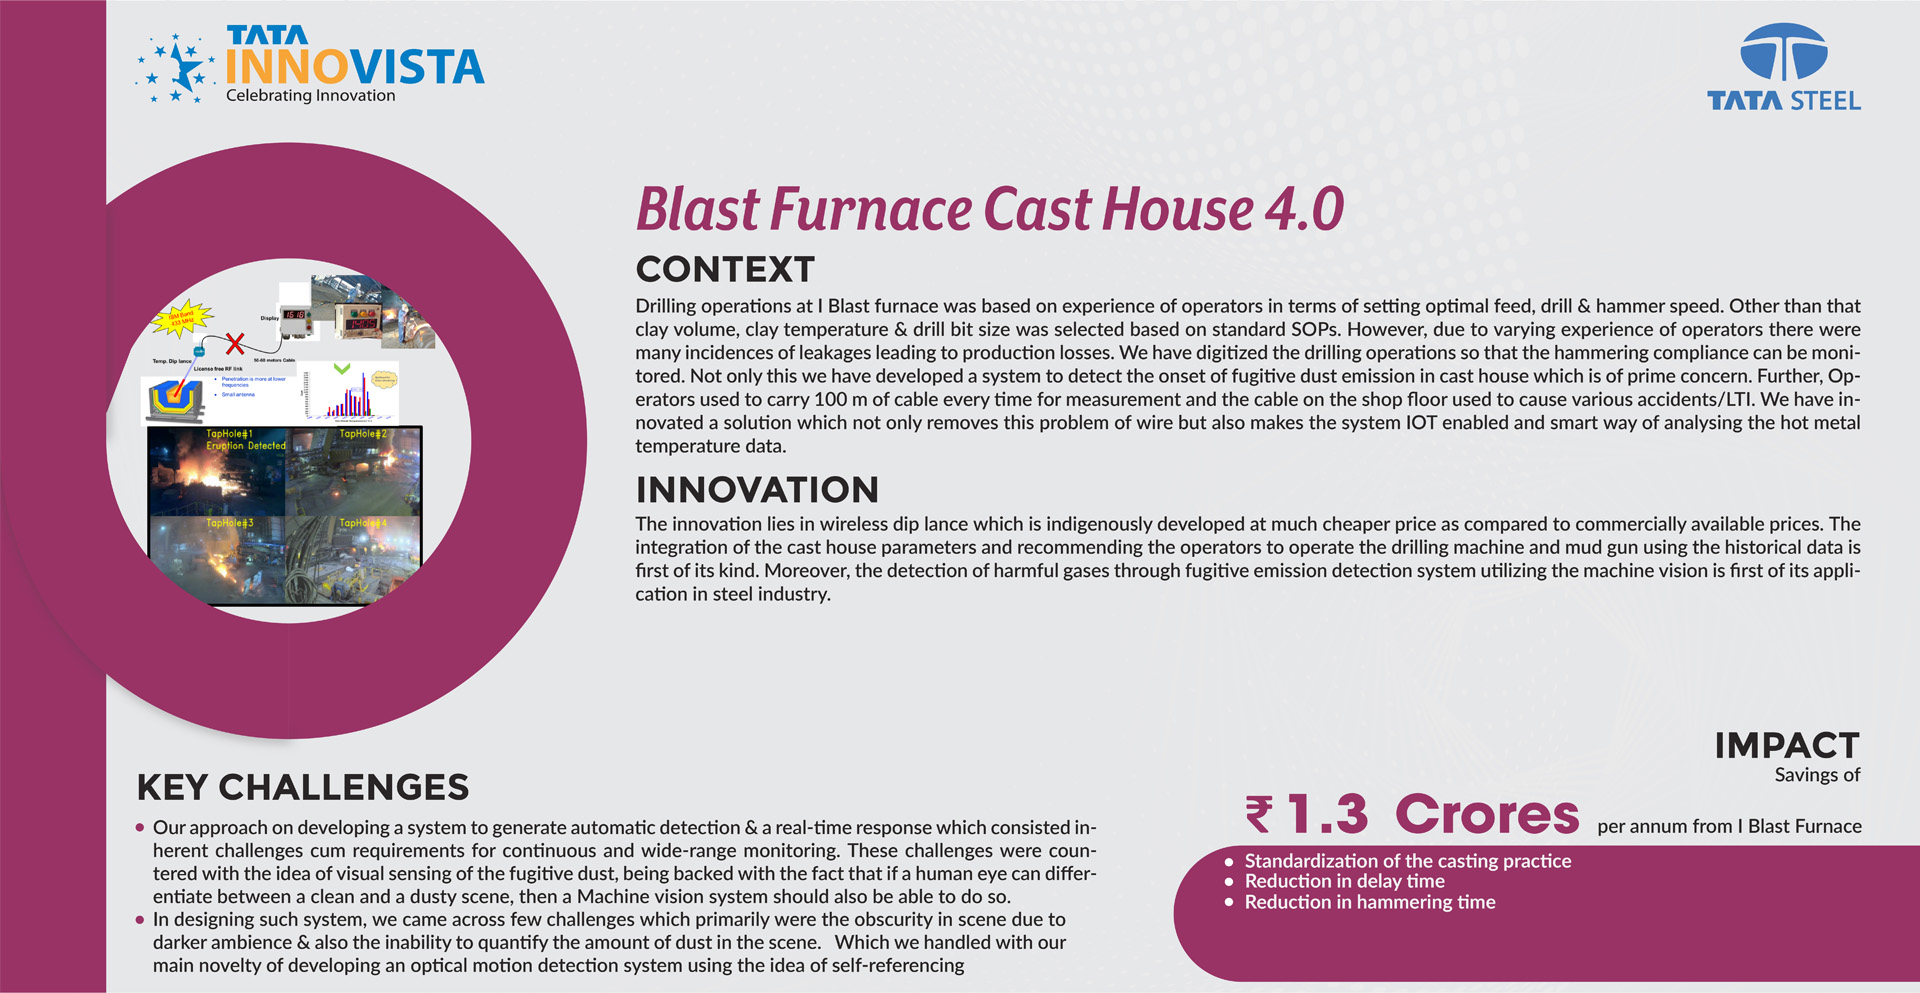 Tata Steel - Blast furnace Cast House 4.0